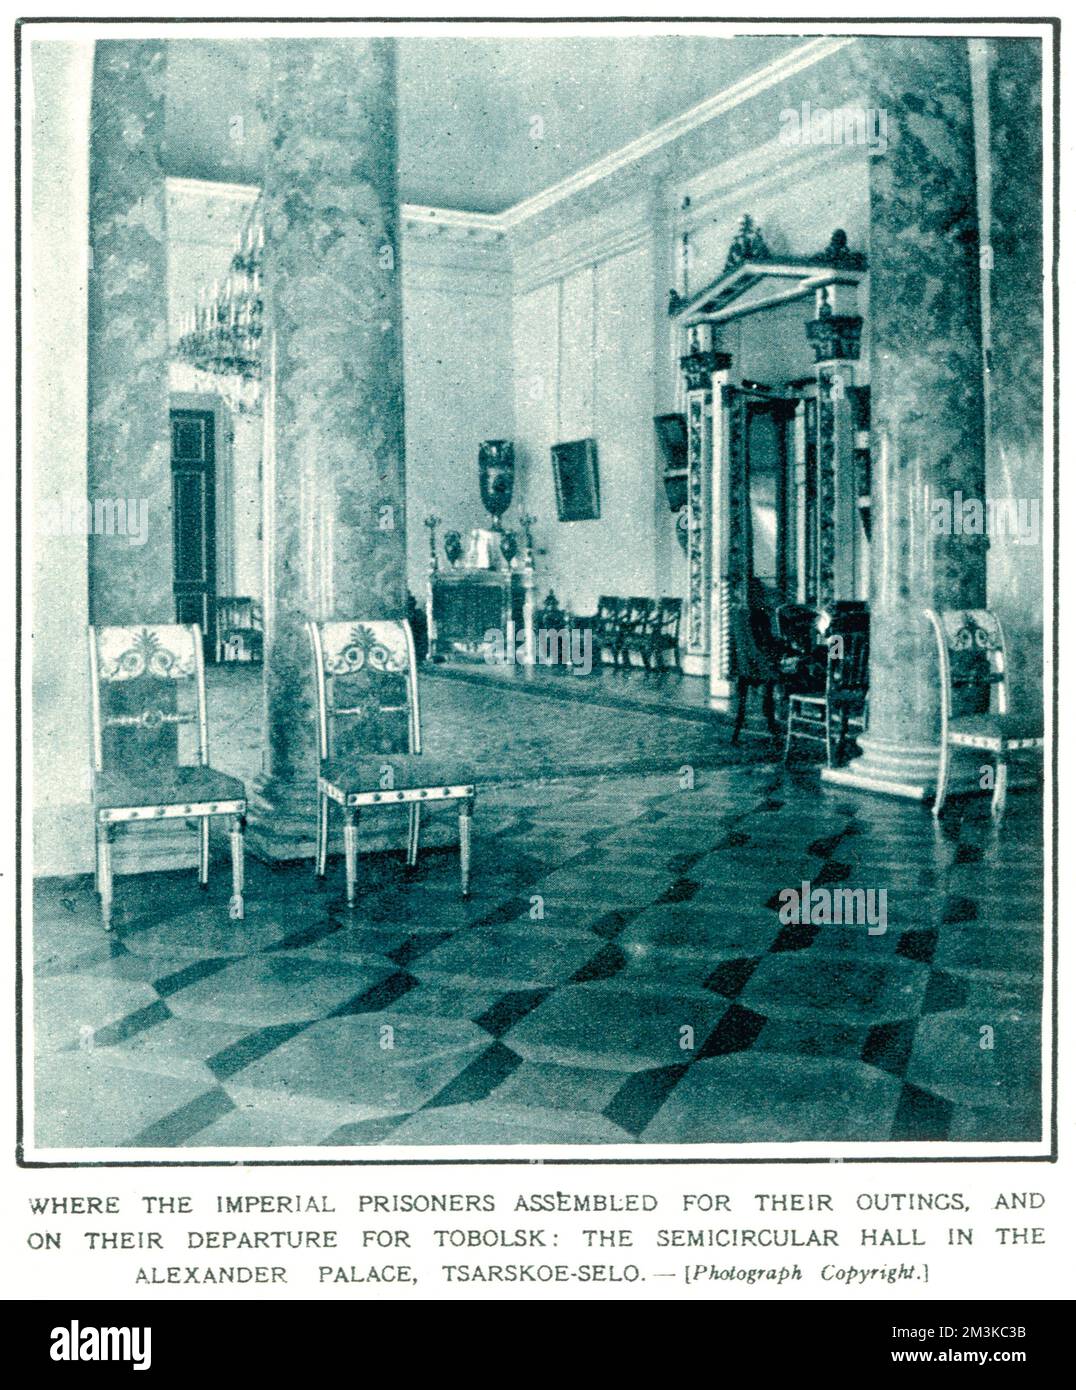 La sala semicircolare dove i prigionieri imperiali si radunarono per le loro uscite e alla loro partenza per Tobolsk. Data: 22nd gennaio 1921 Foto Stock